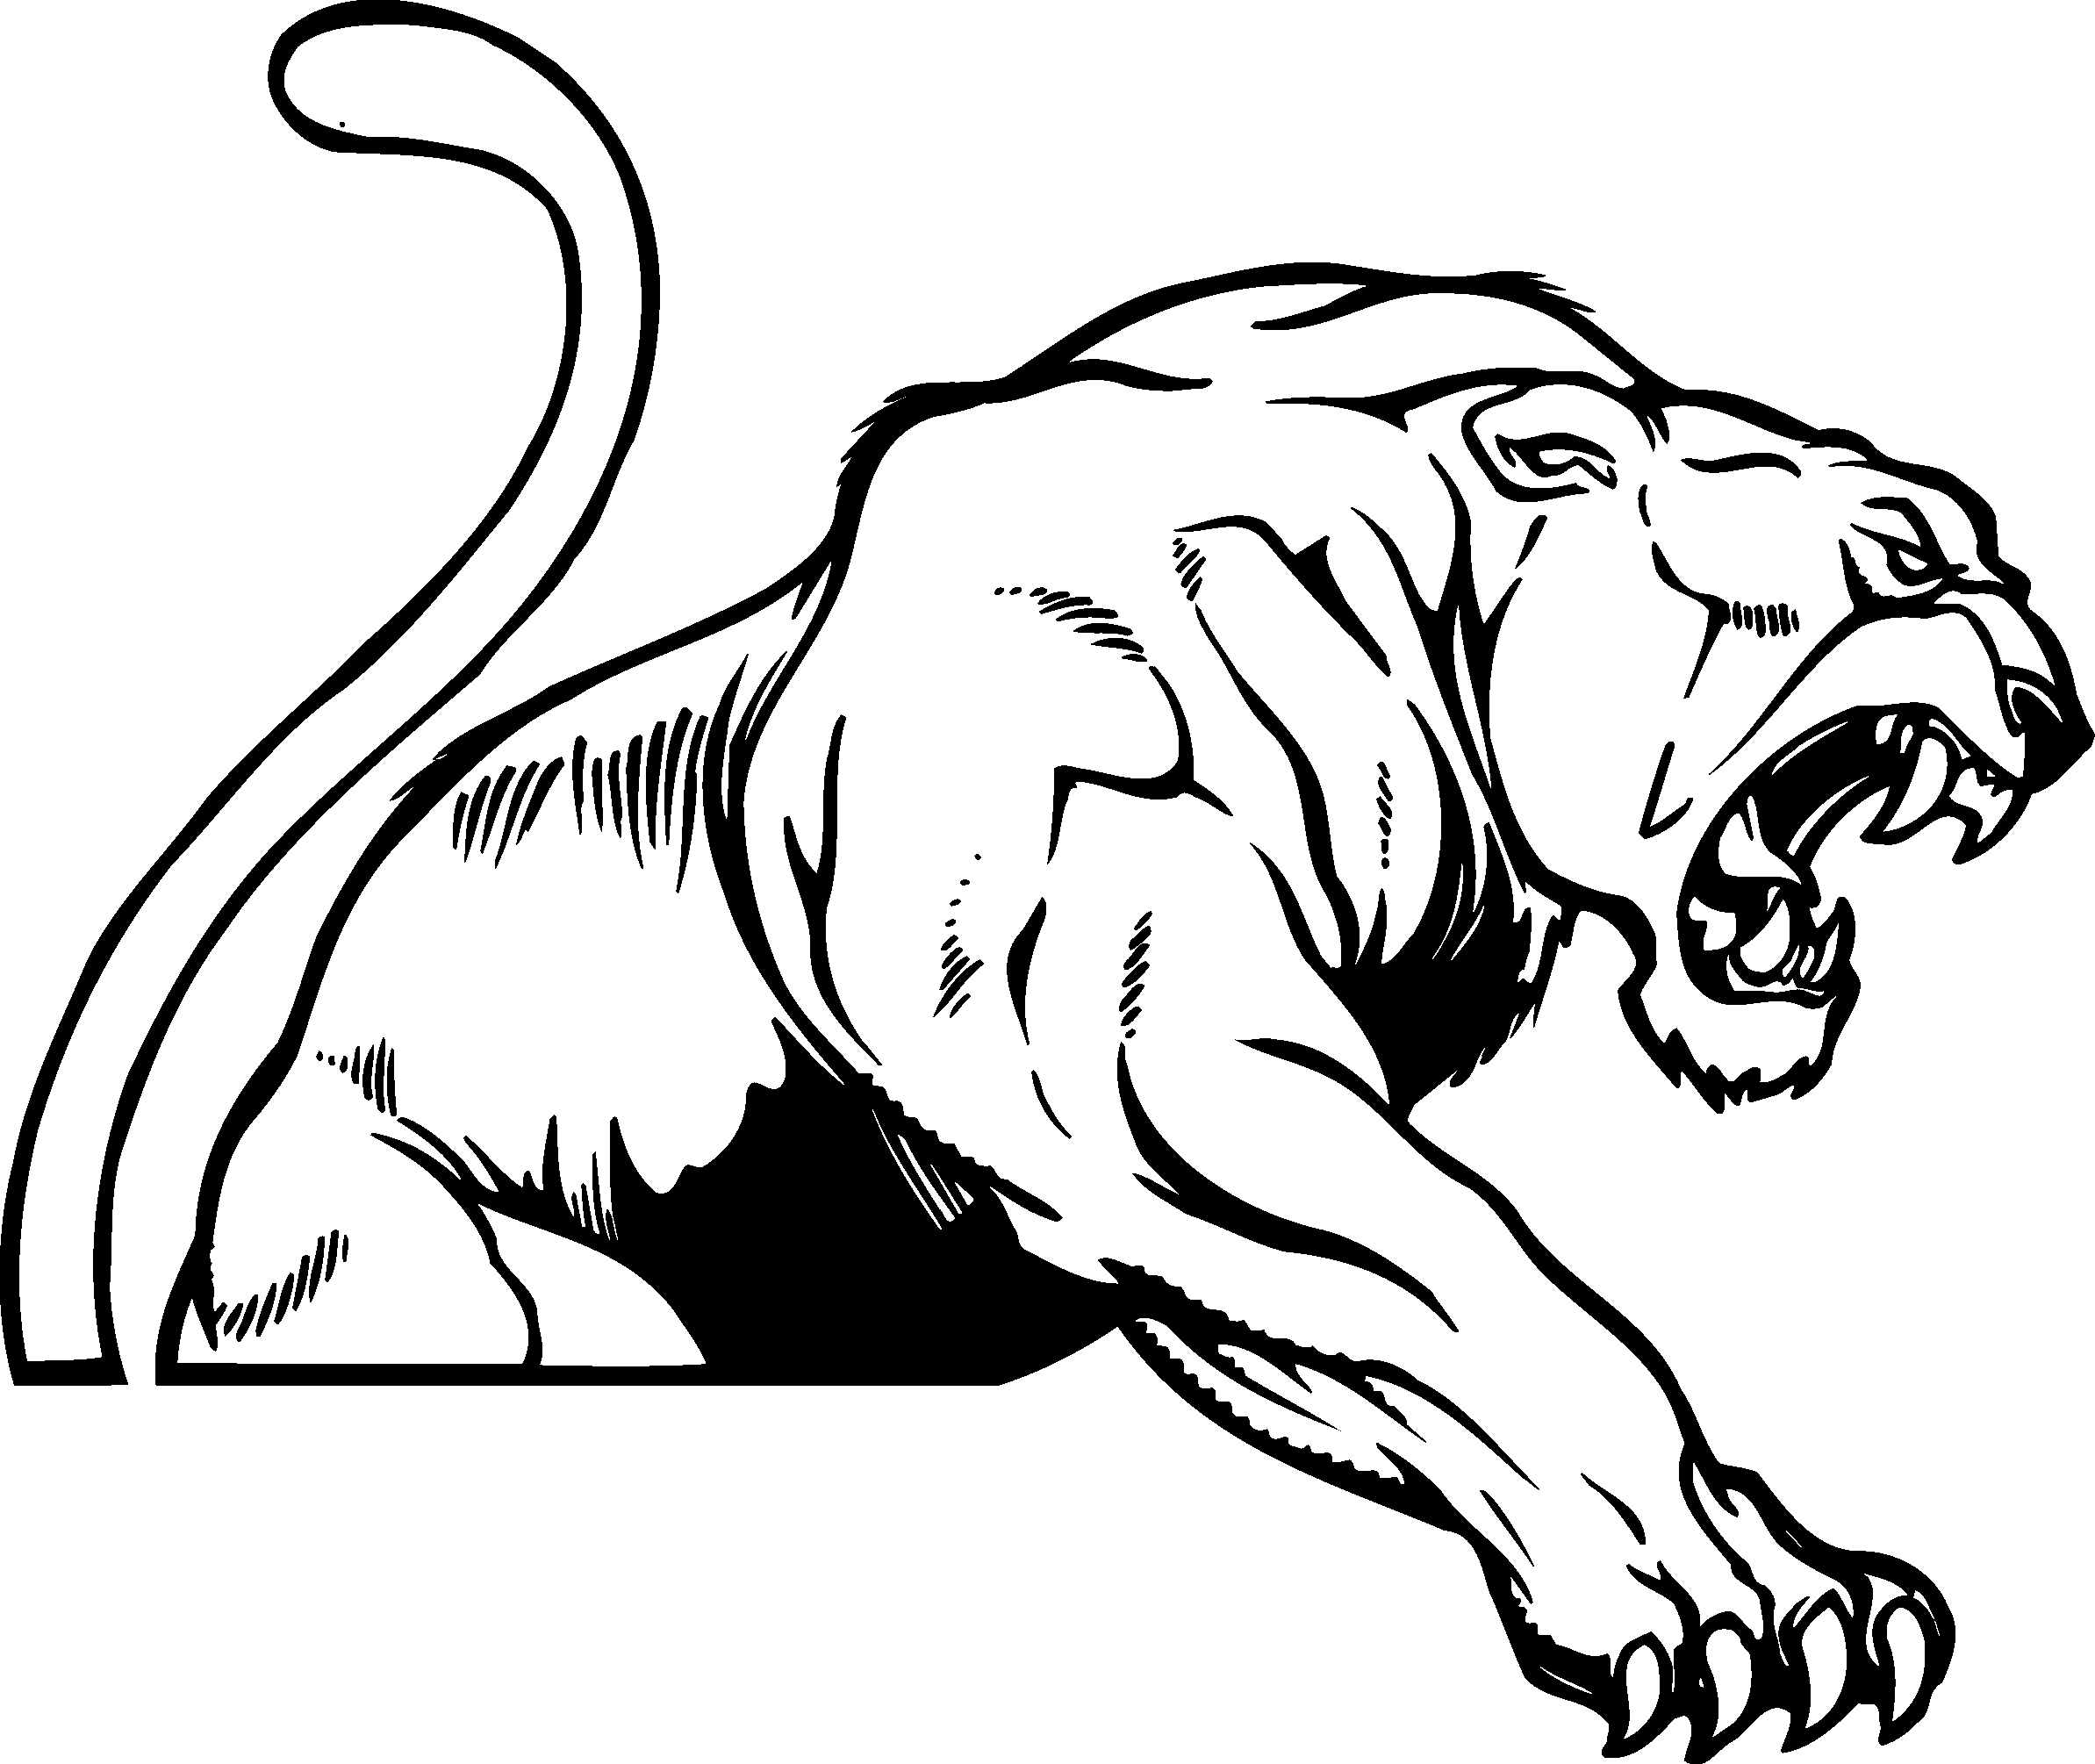 White Panther Logo - Black panther LOGO. ghoghi. Logos, Art logo, Picture logo